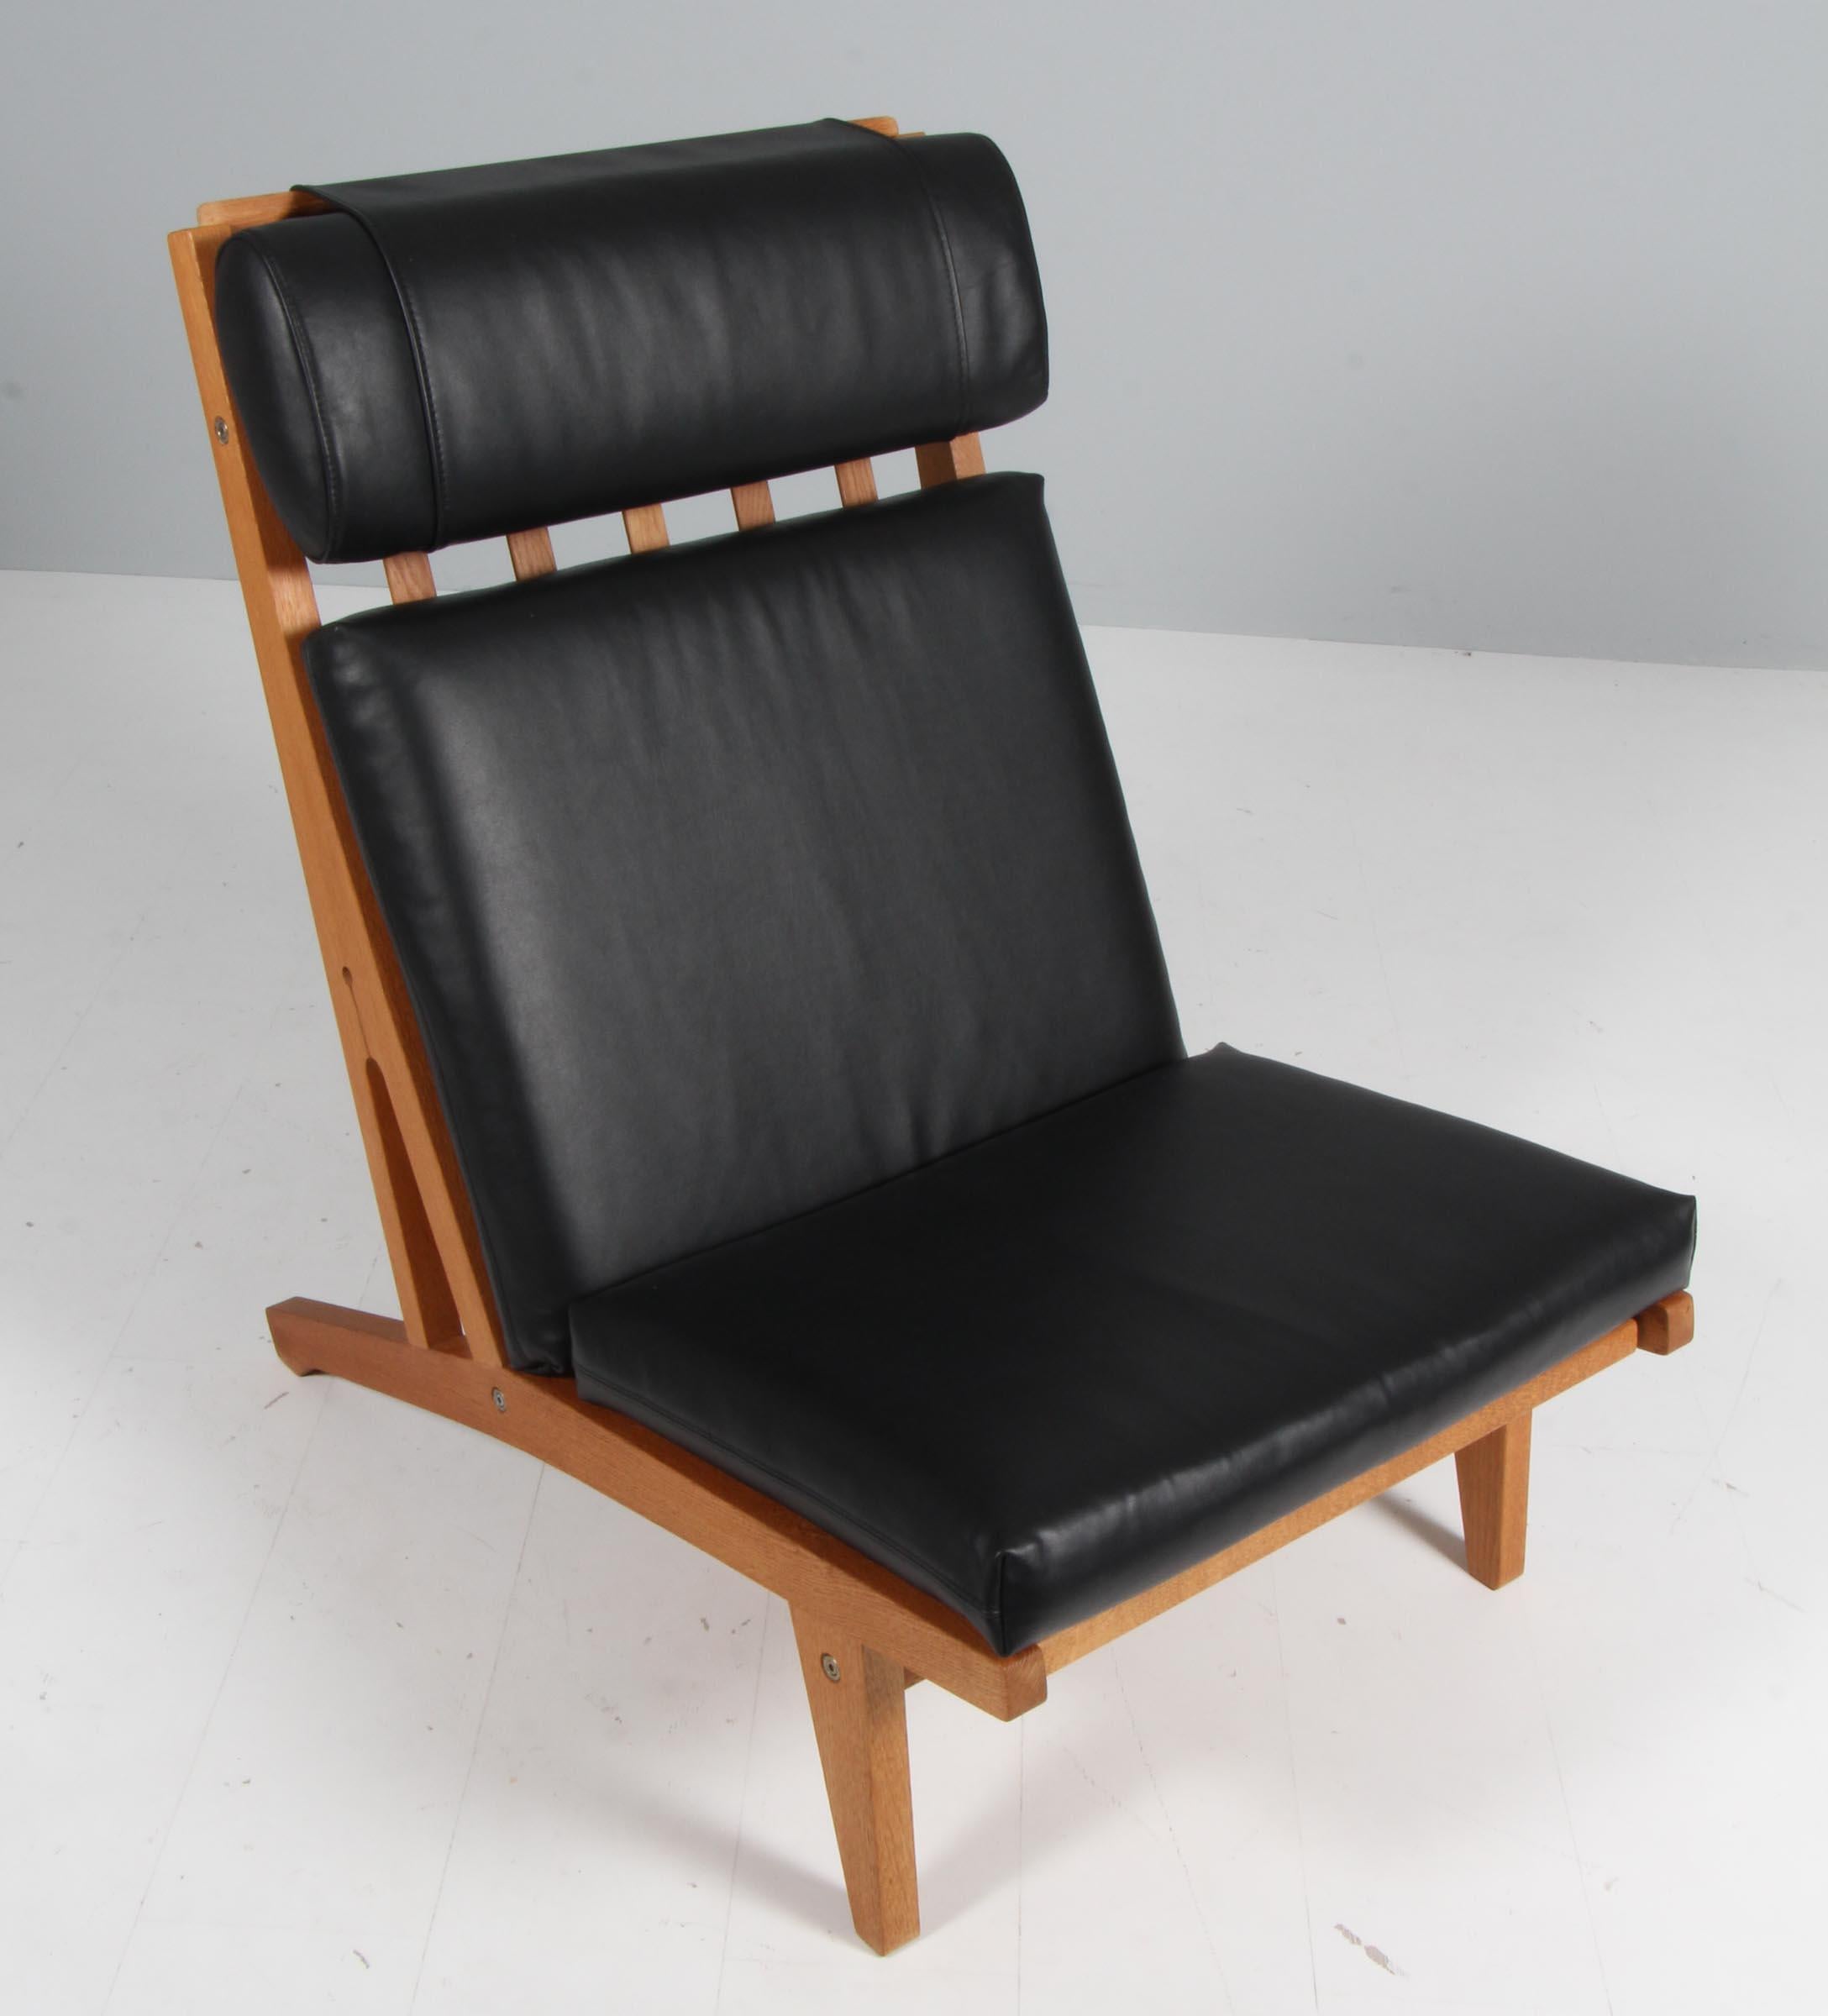 Chaise de salon Hans J. Wegner avec coussins détachés, nouvellement recouverte de cuir noir pur pleine fleur à l'aniline.

Cadre en chêne.

Modèle GE-375, fabriqué par GETAMA.